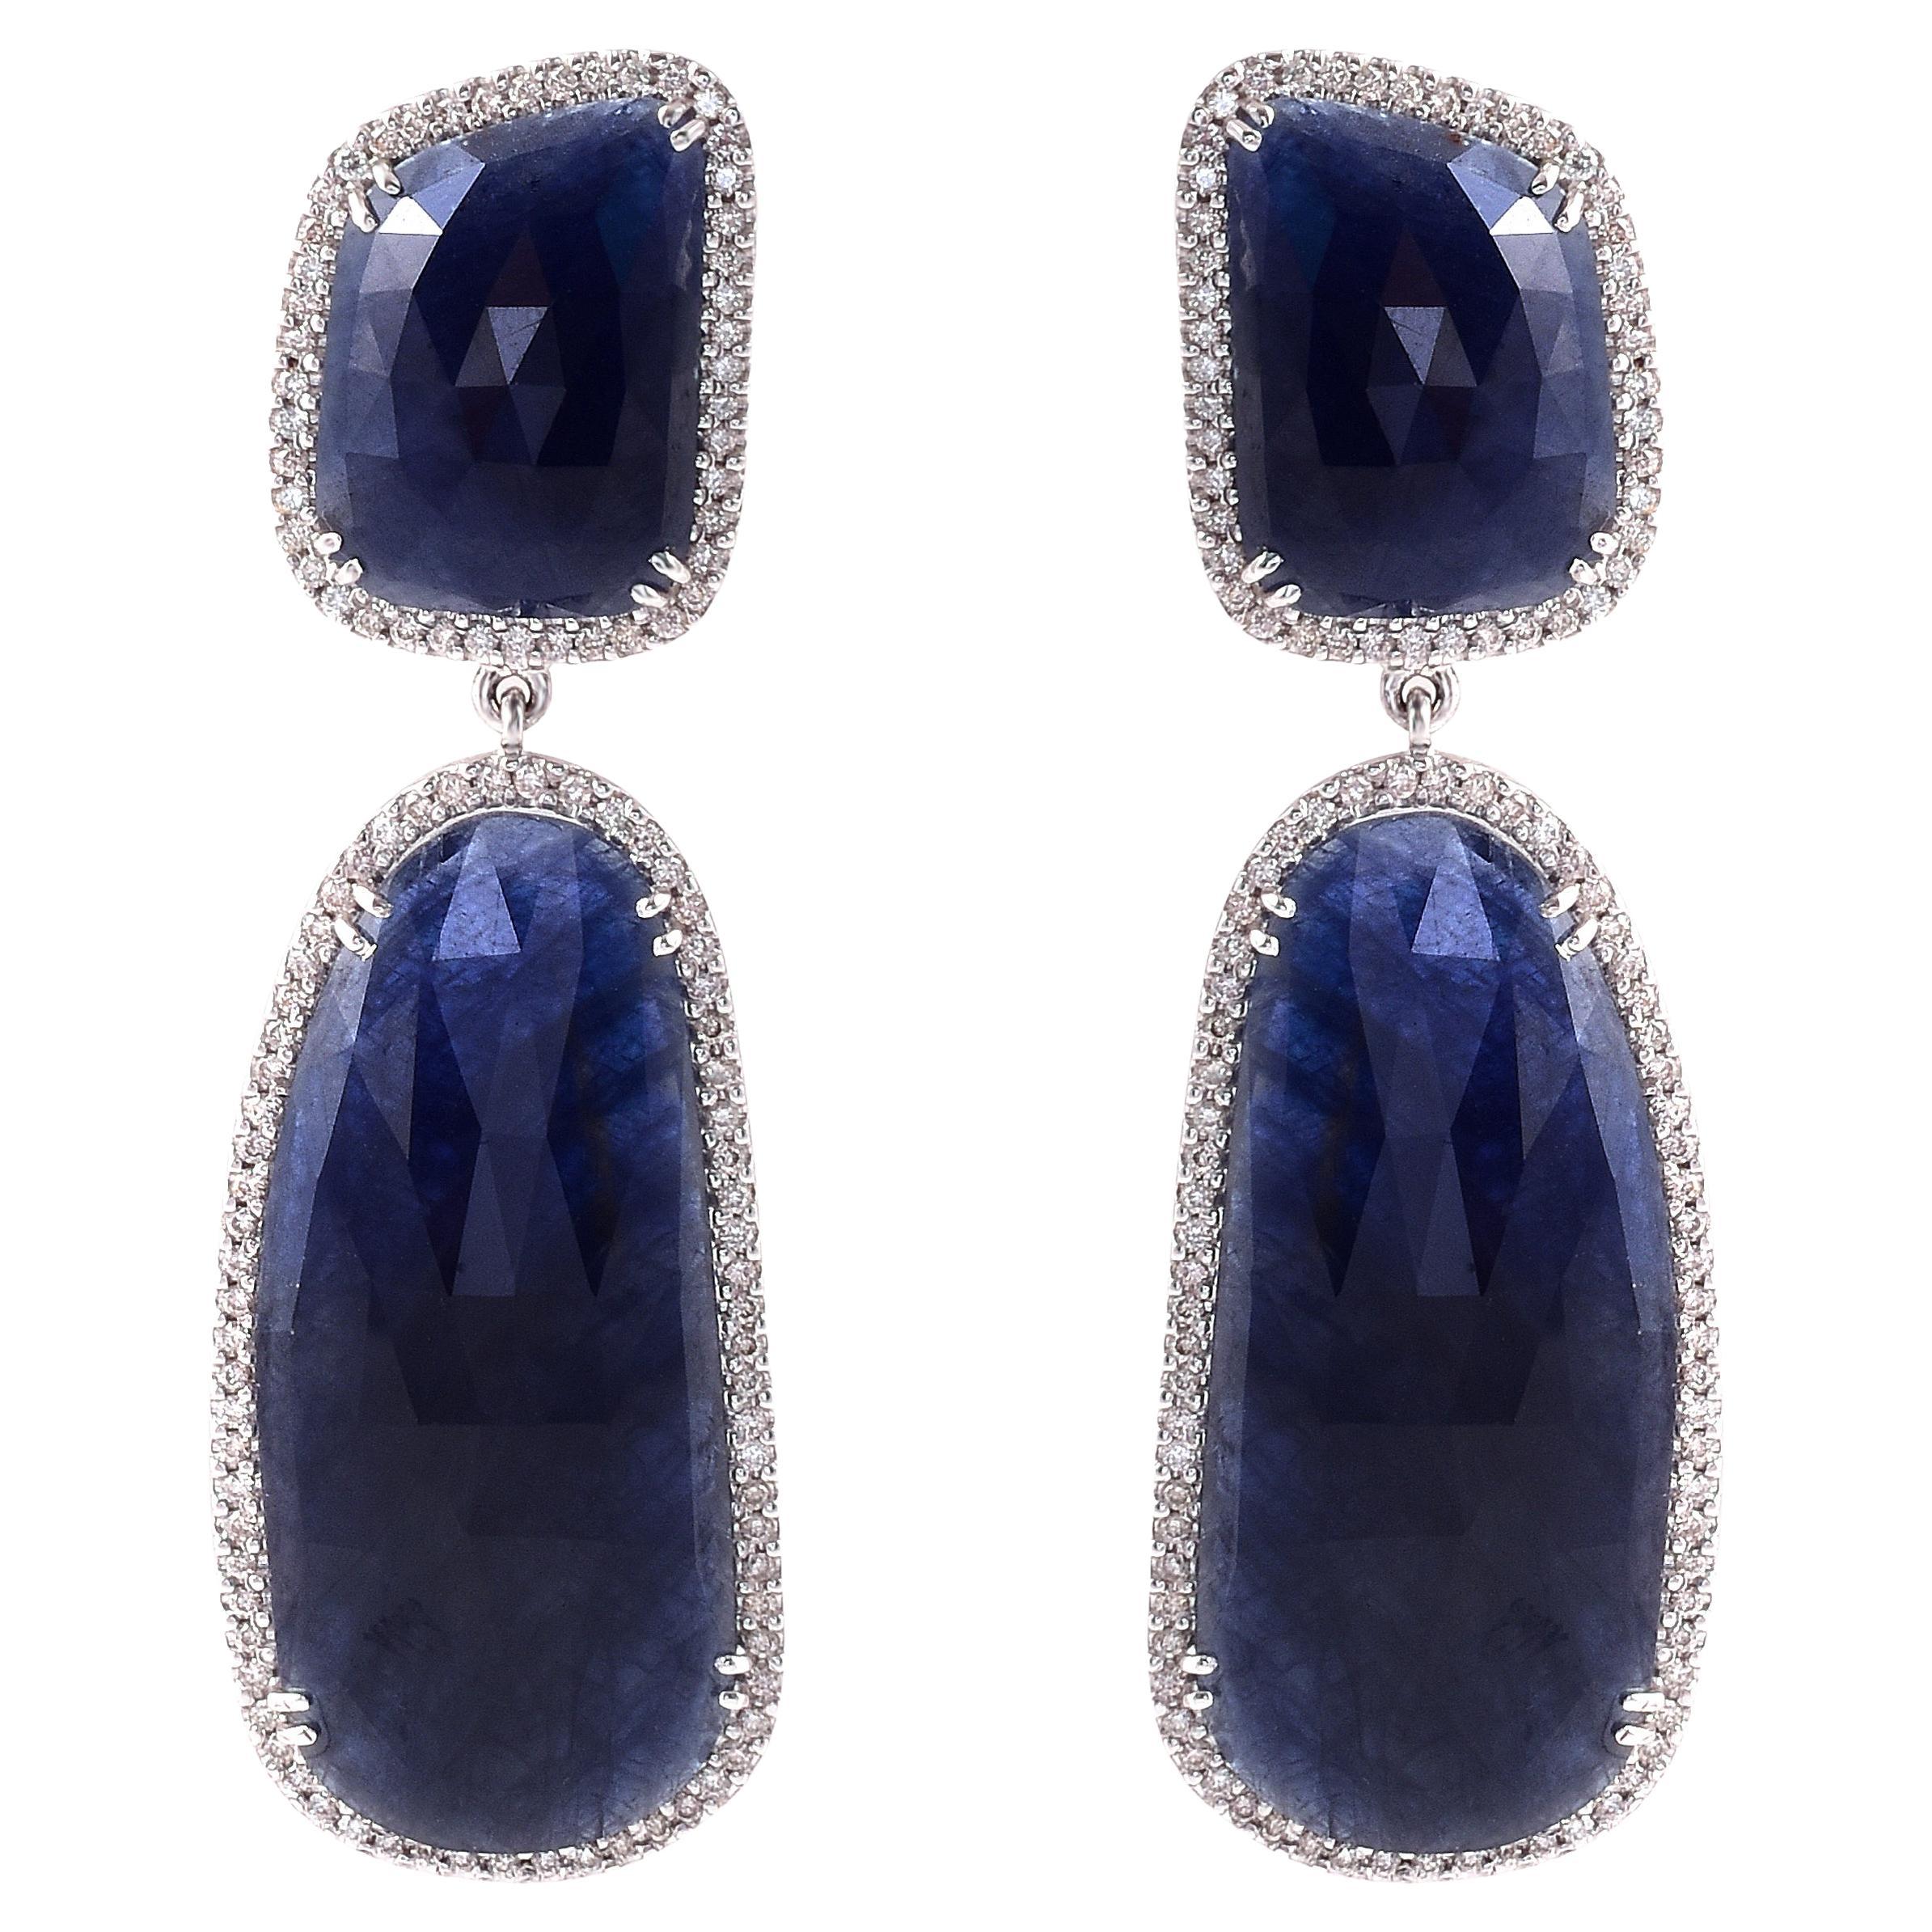 Boucles d'oreilles pendantes cocktail en or blanc 18 carats avec saphir bleu de 64,57 carats et diamants